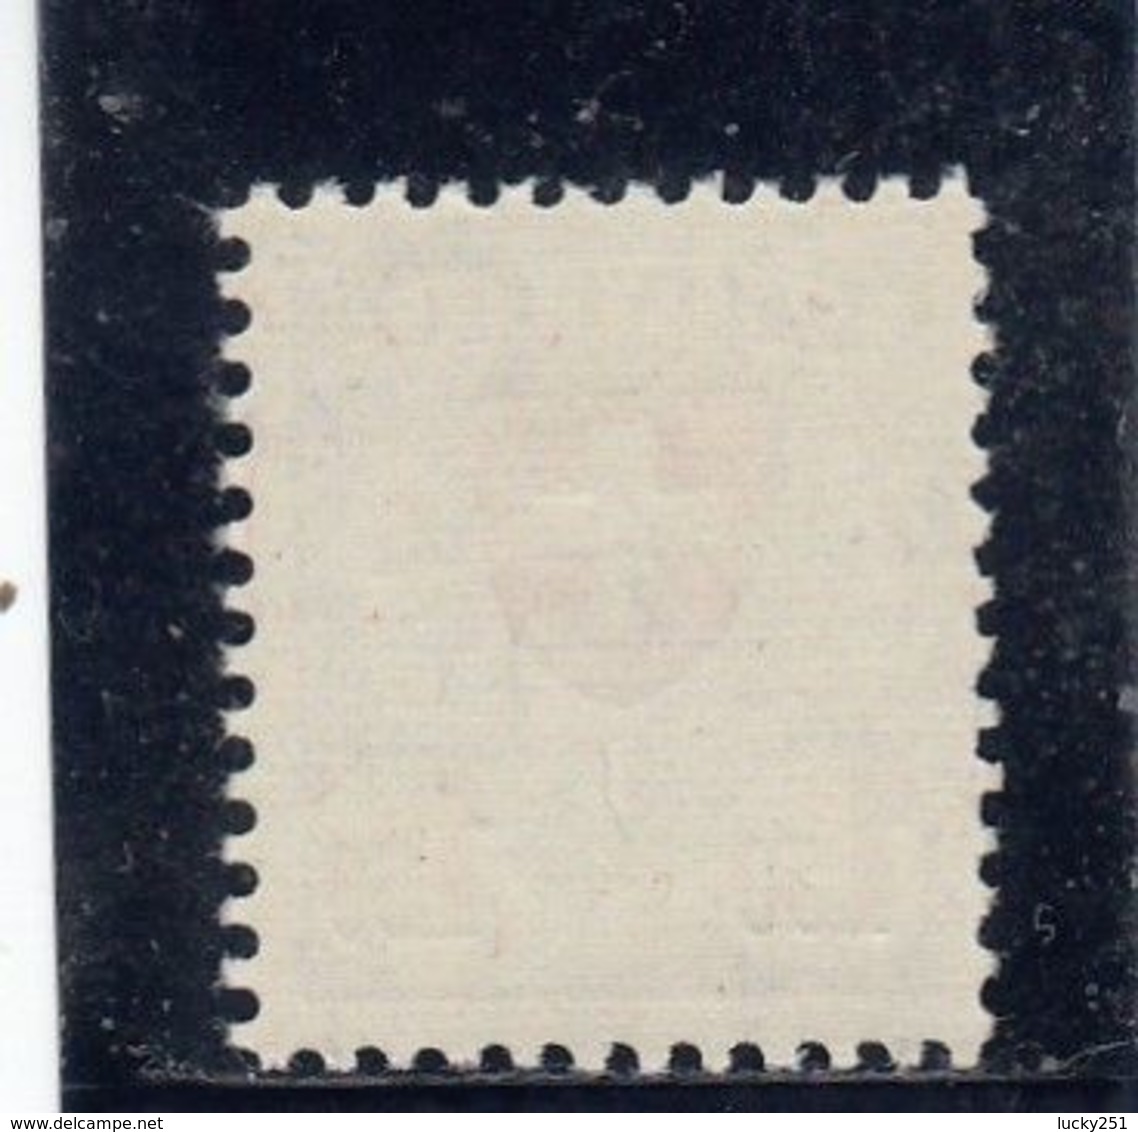 Suisse - Année 1933/34 - Type écusson - N°YT 210a** - Papier Gaufré (grillé) - Neufs